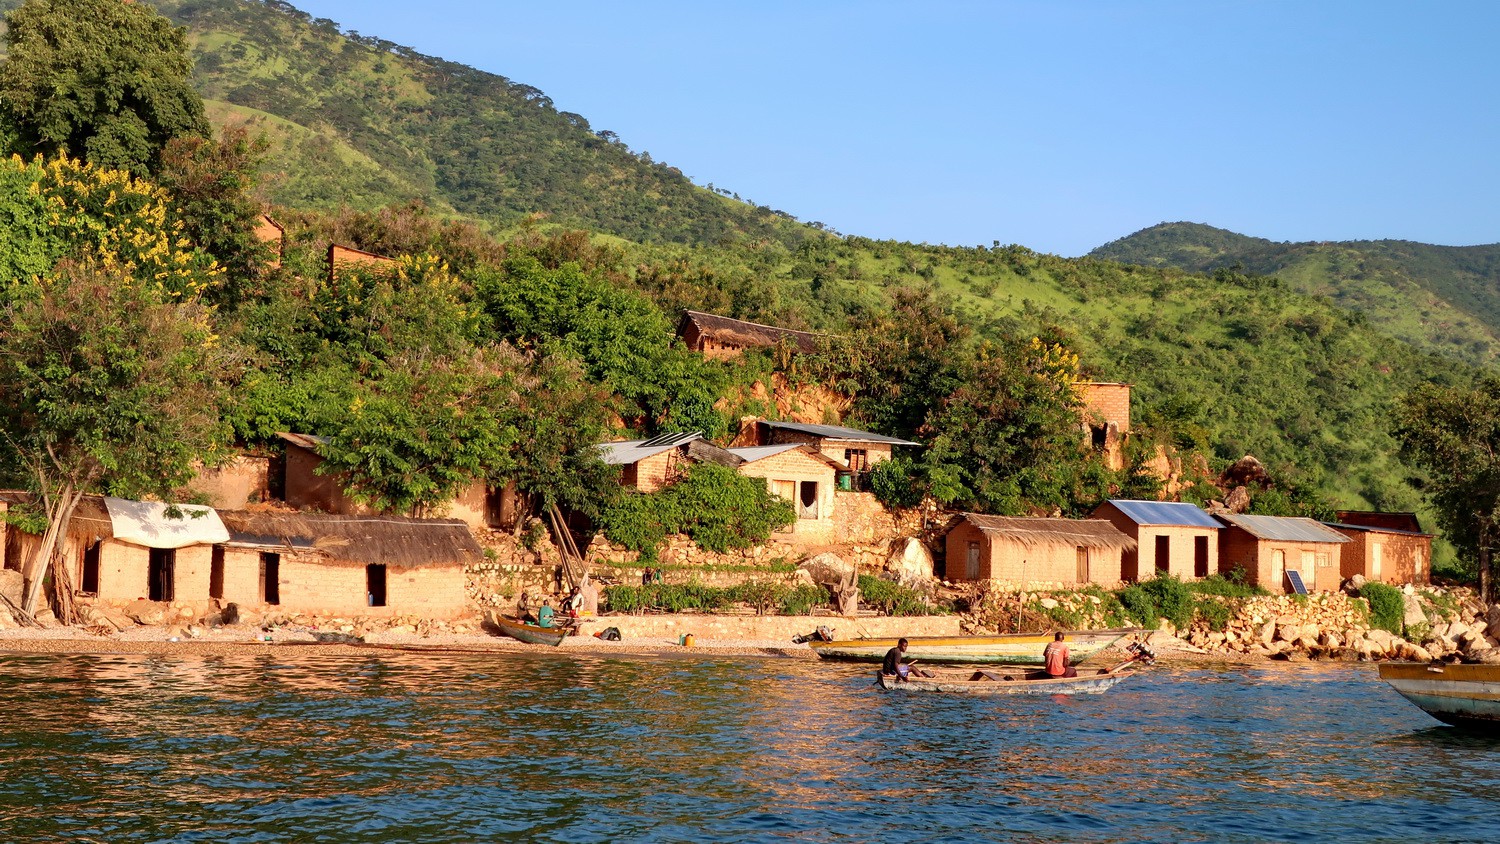 Little village on shore of Lake Tanganyika